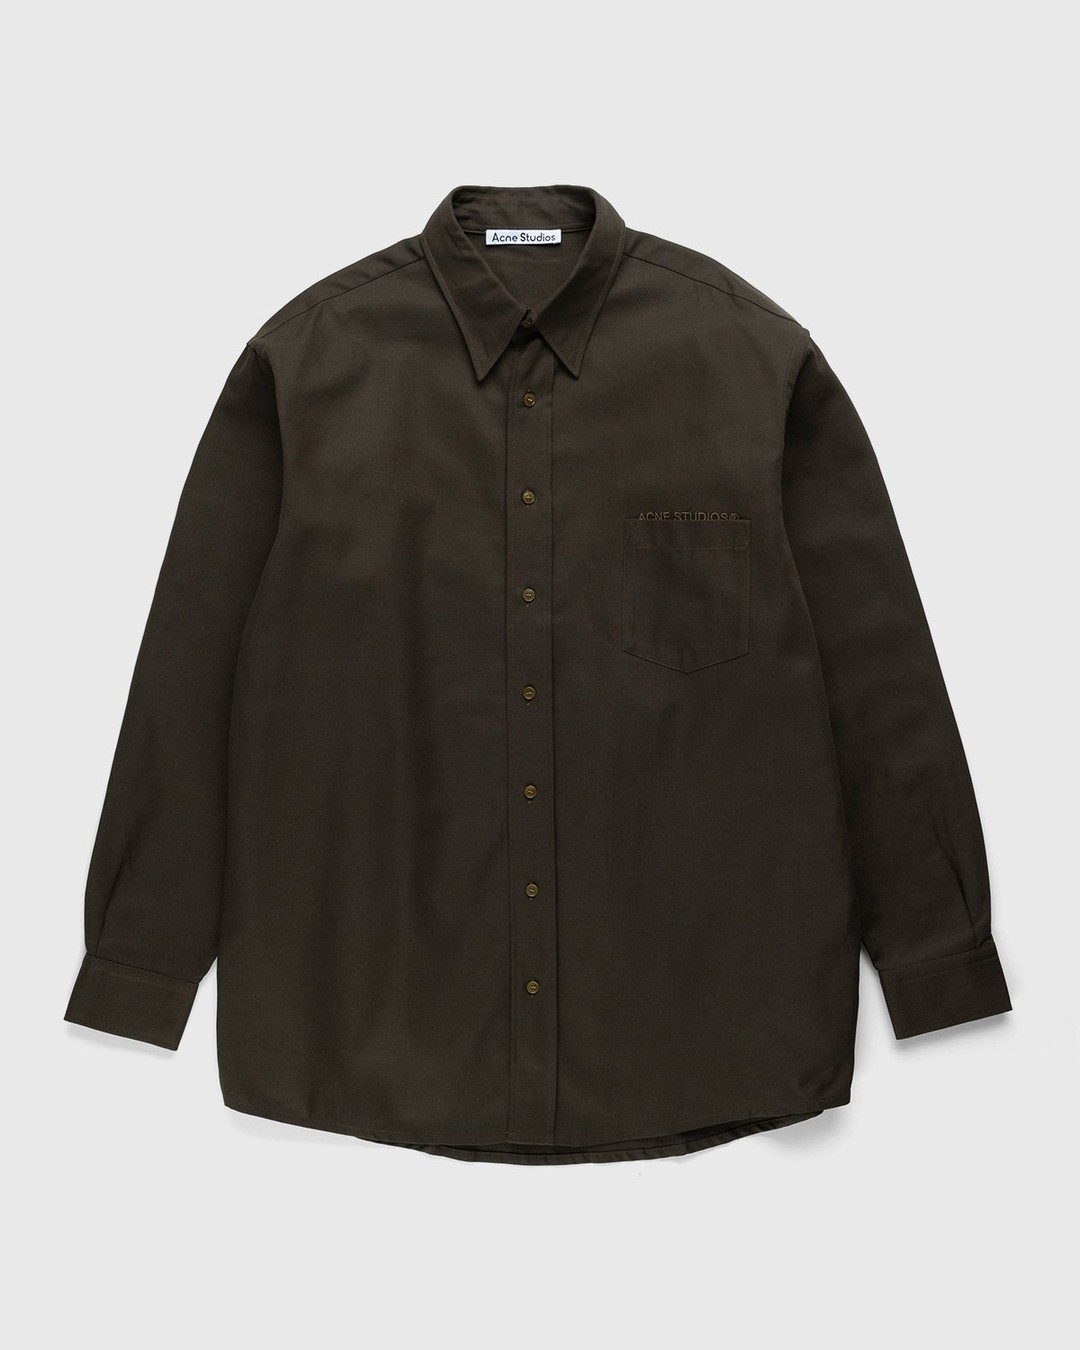 Acne Studios – Linen Blend Button-Up Shirt Dark Olive - Longsleeve Shirts - Green - Image 1